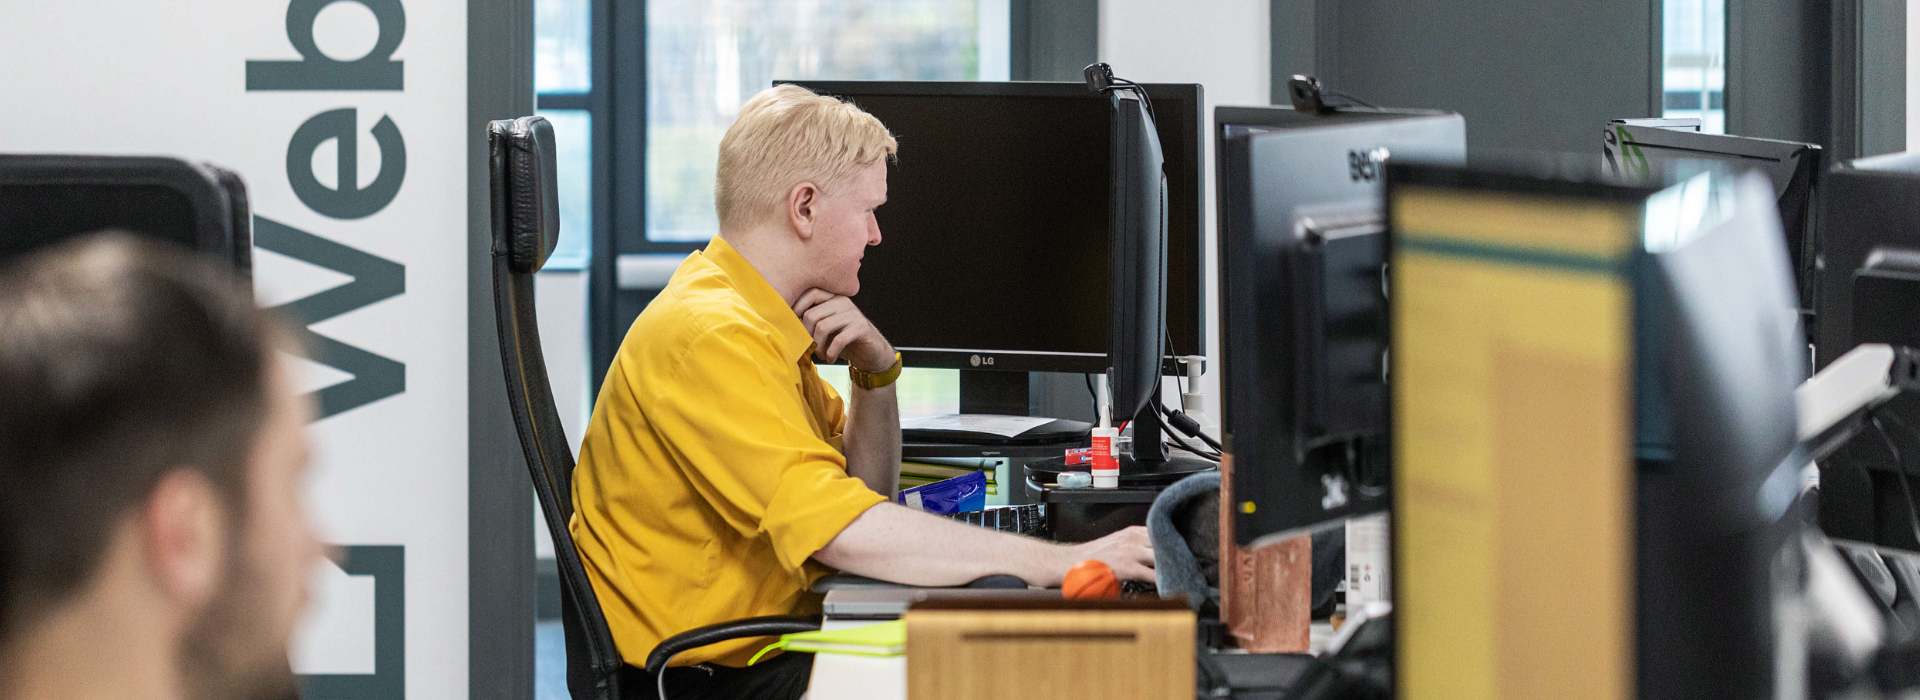 Man in a yellow shirt sat a desk using a computer for website development